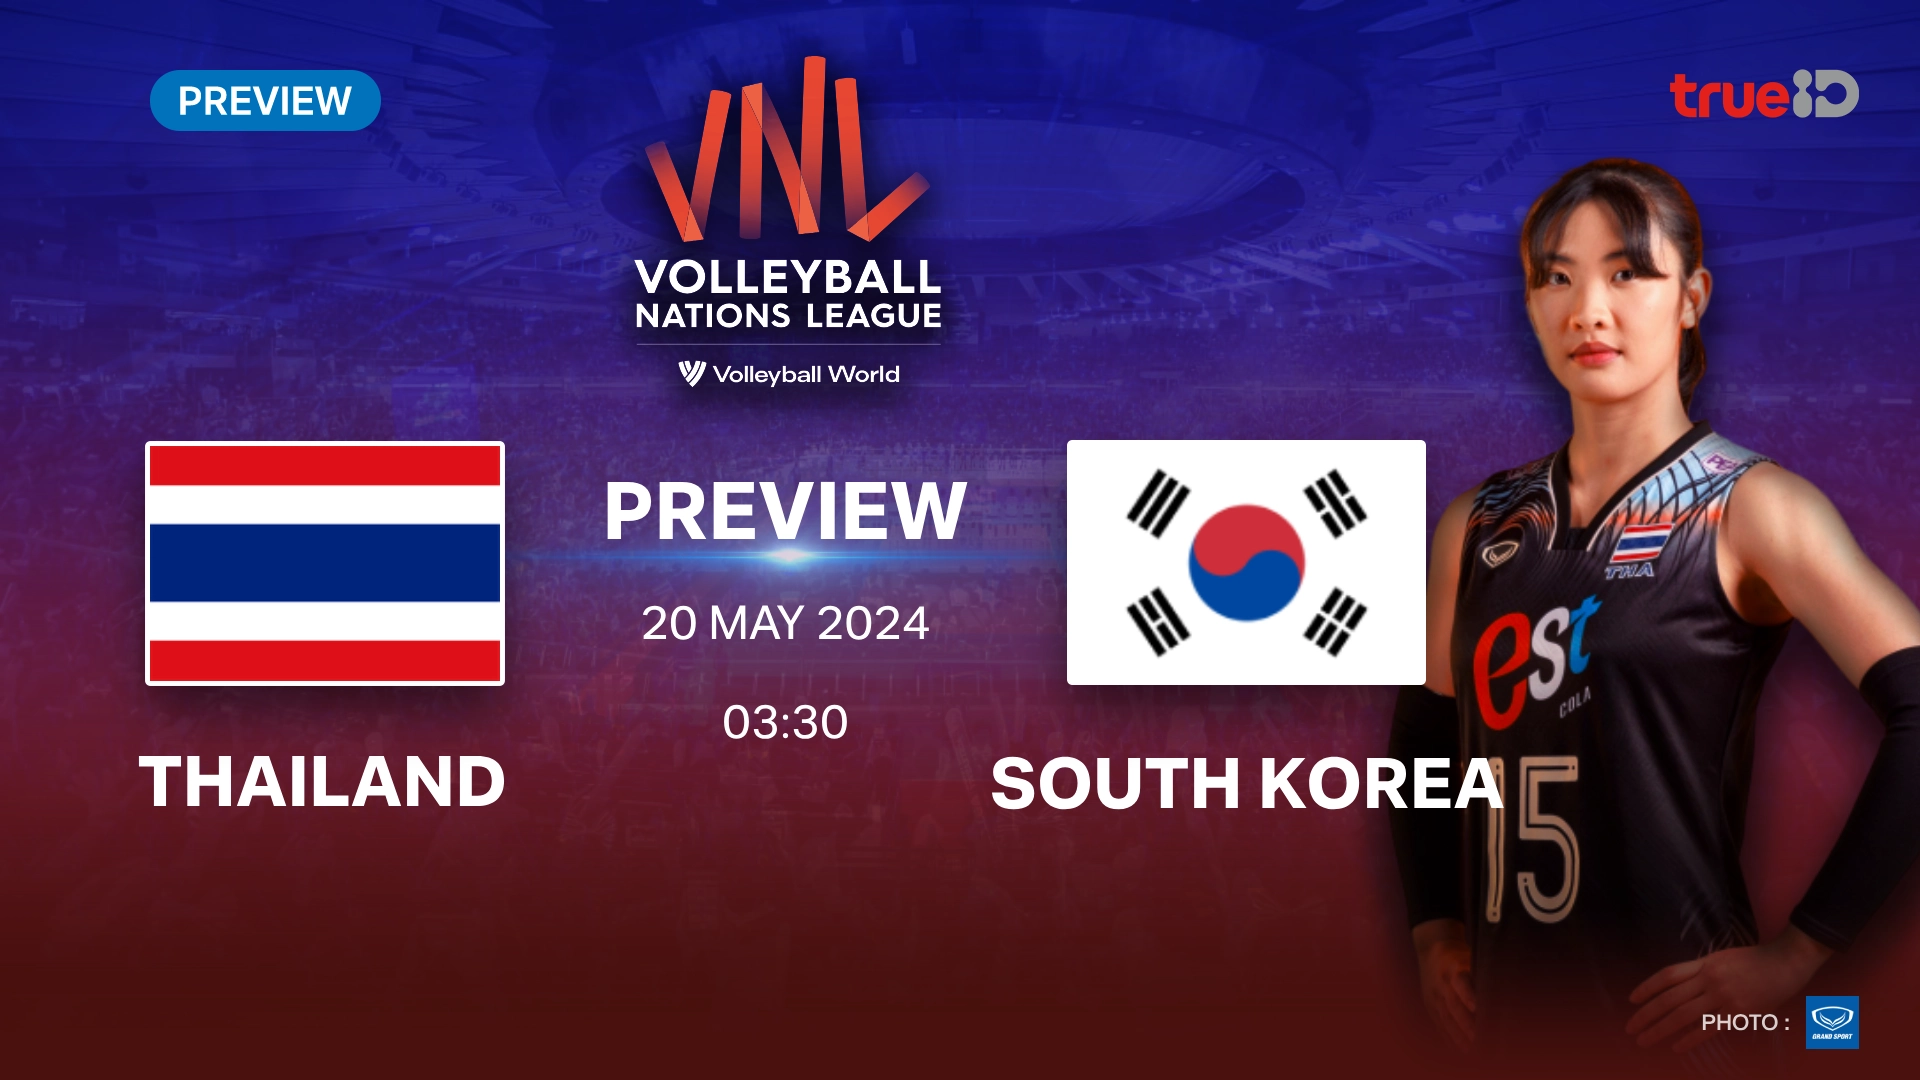 ไทย VS เกาหลีใต้ : พรีวิว วอลเลย์บอลหญิง เนชั่นส์ ลีก 2024 (ลิ้งก์ดูสด)